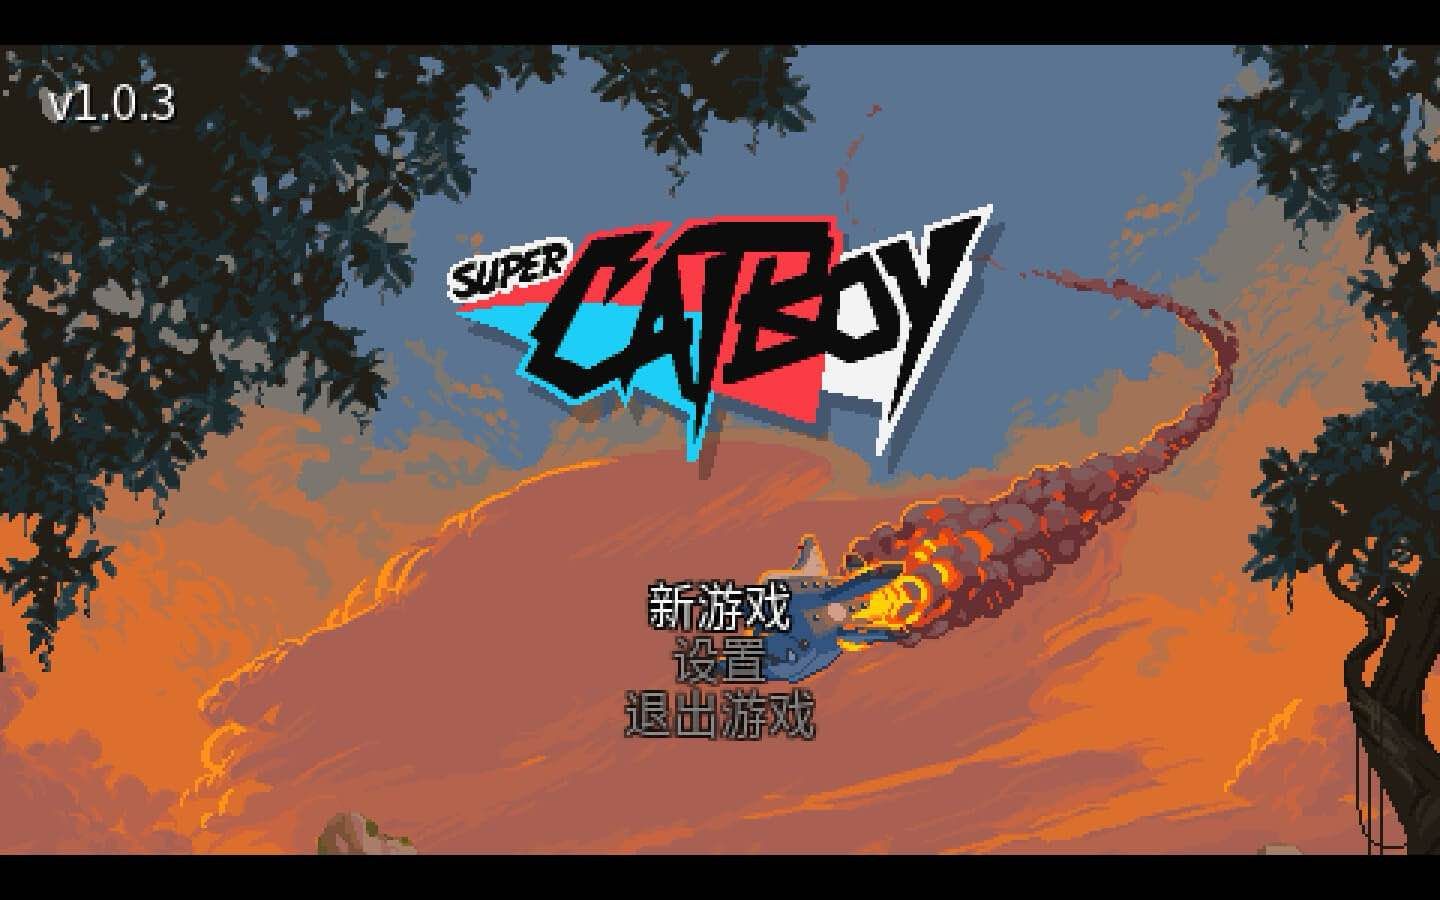 超级猫猫哥 for Mac Super Catboy v1.0.4a 中文原生版